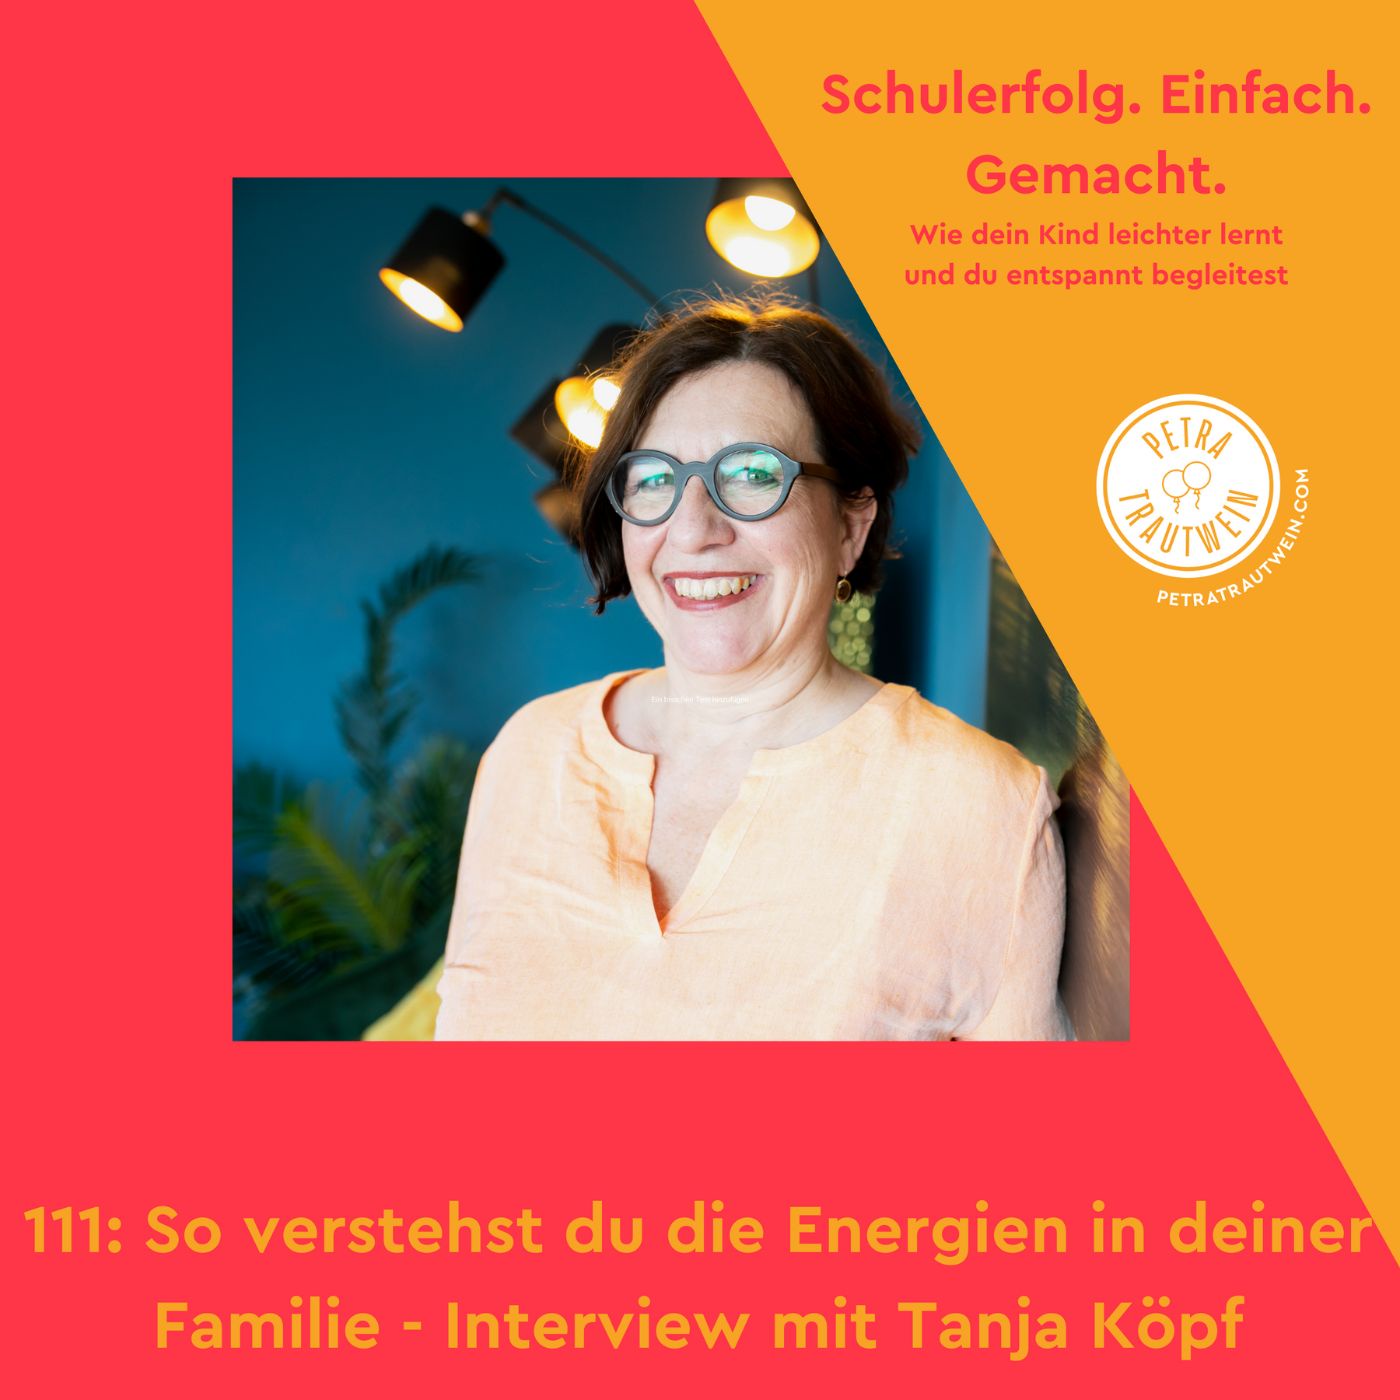 So verstehst du die Energien in deiner Familie - Interview mit Tanja Köpf